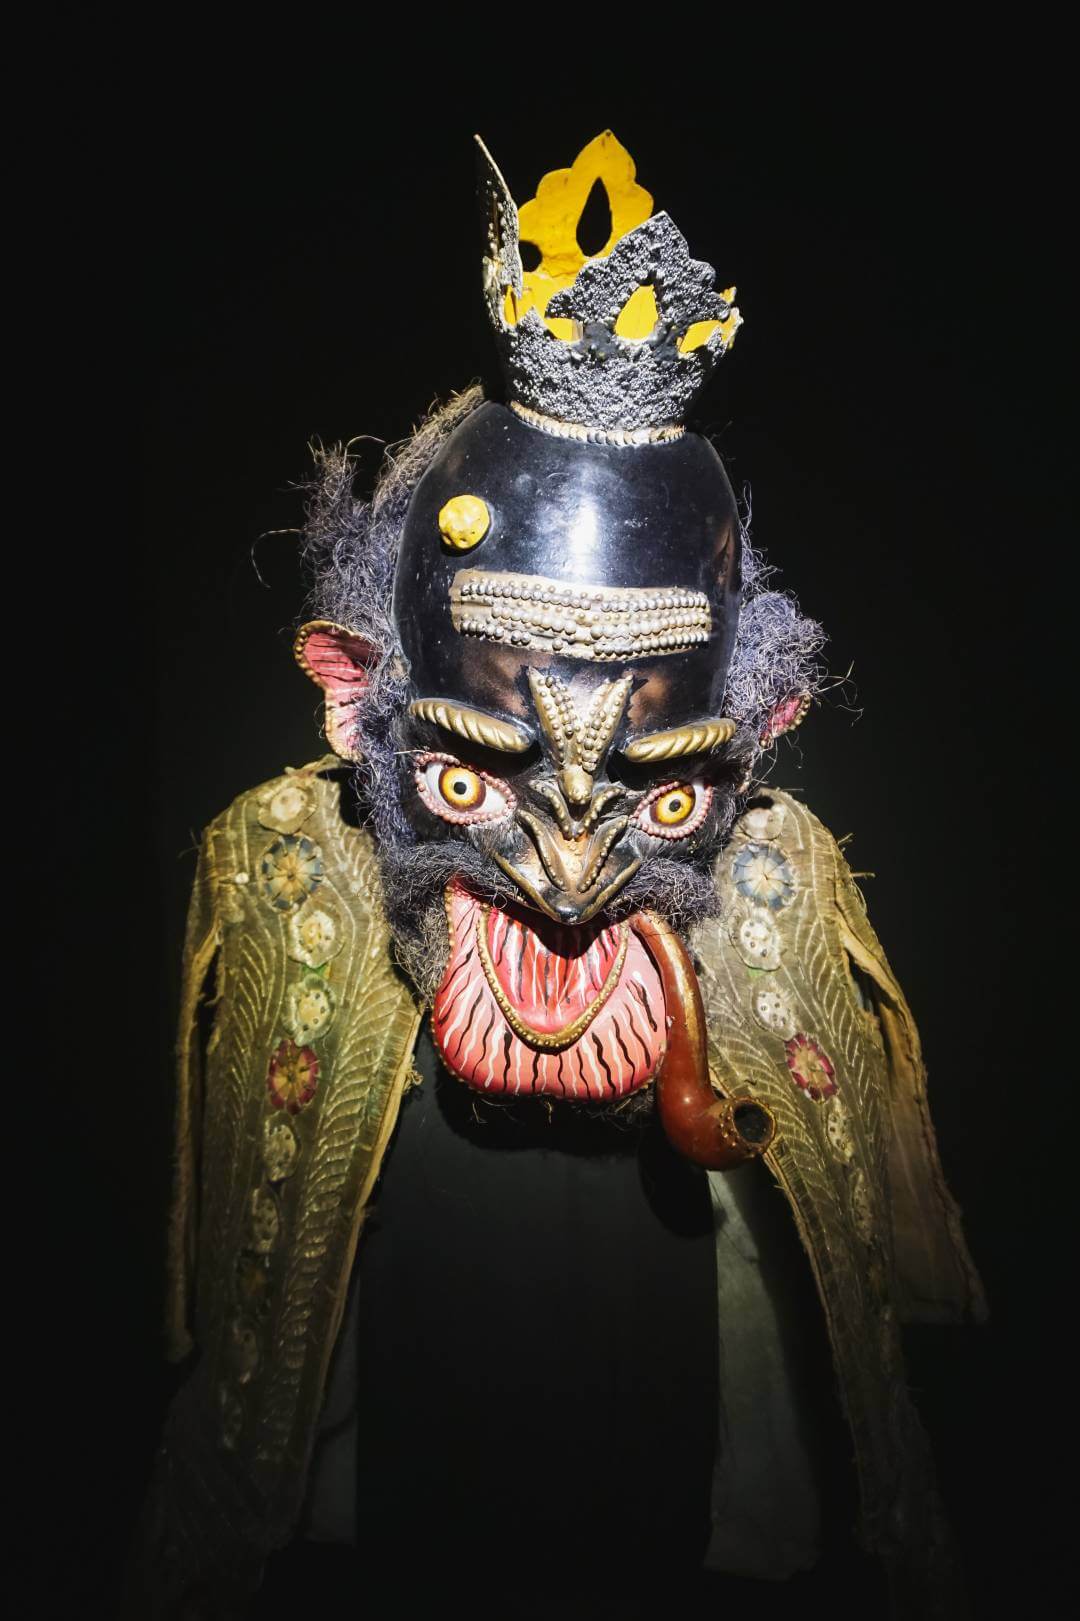 Colección de máscaras de los carnavales de Bolivia en el Museo Nacional de Etnografía y Folklore